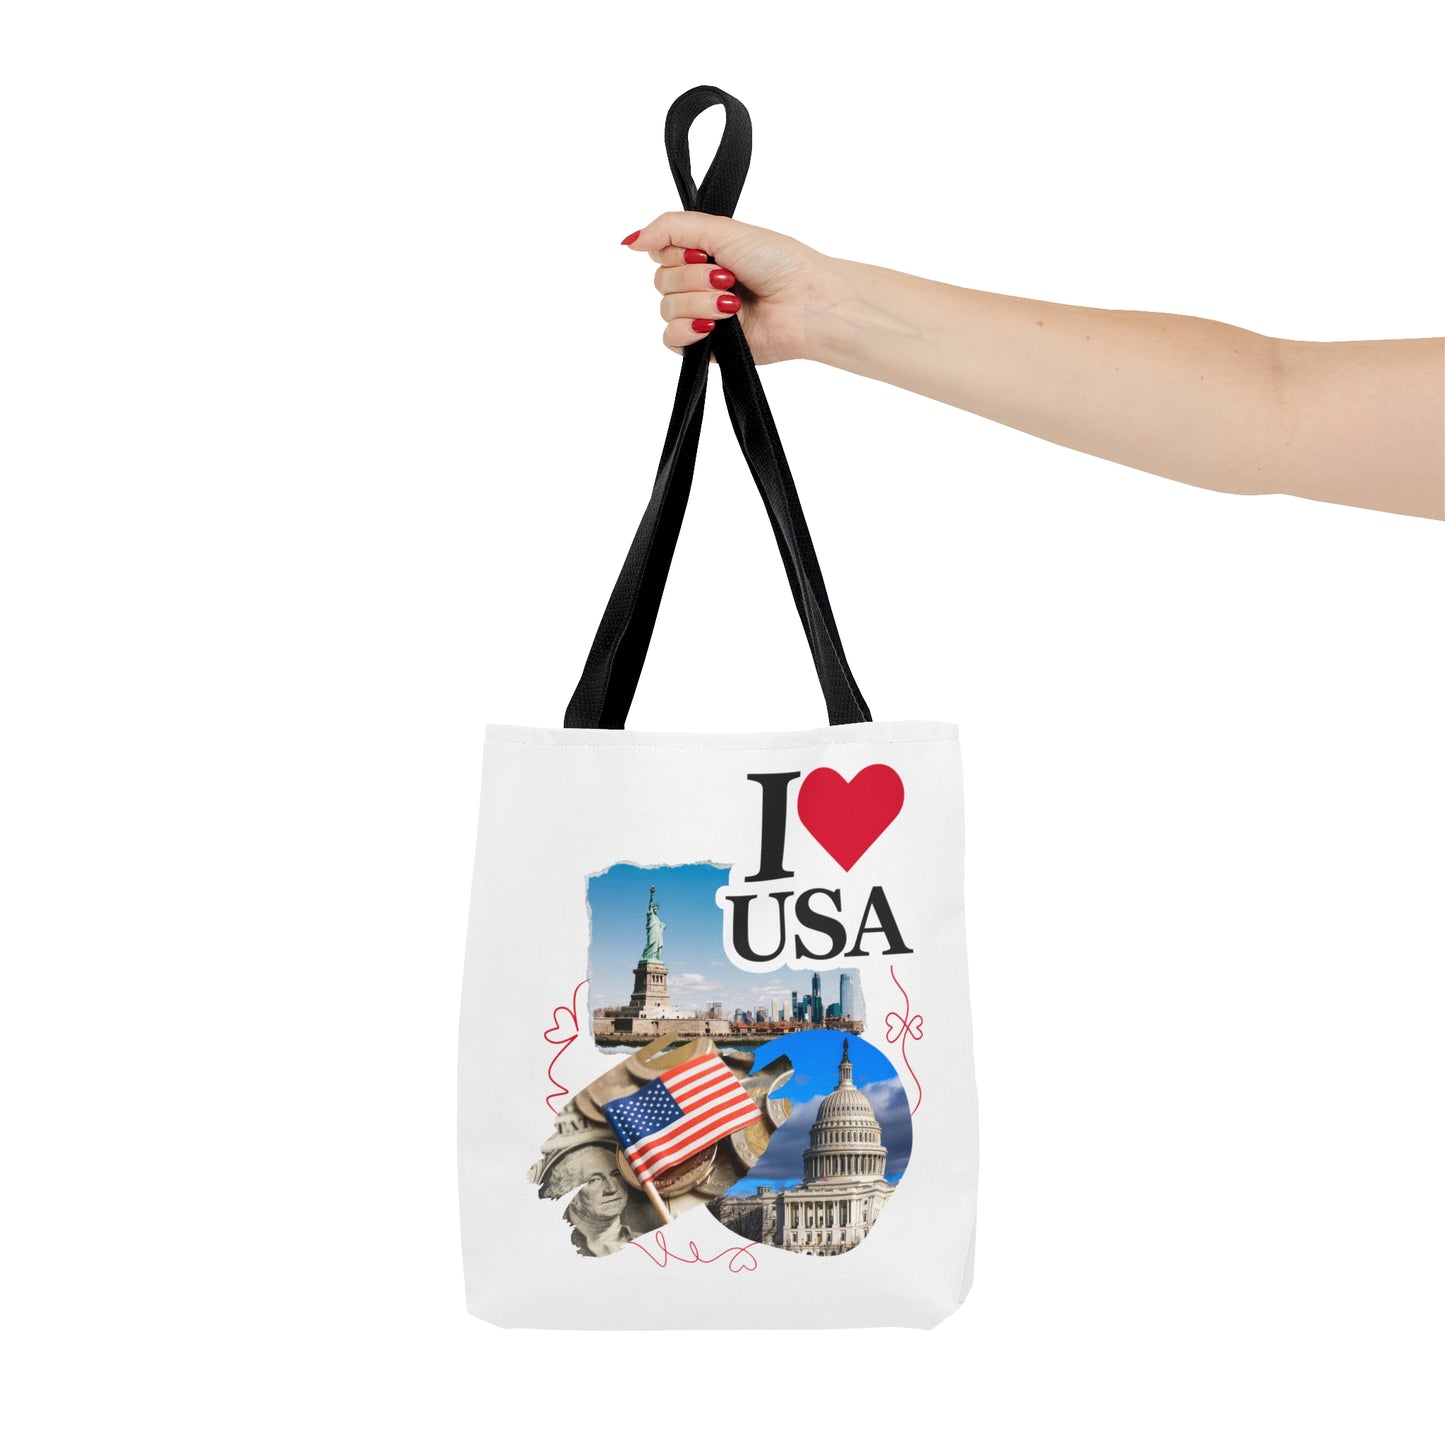 US Tote Bag